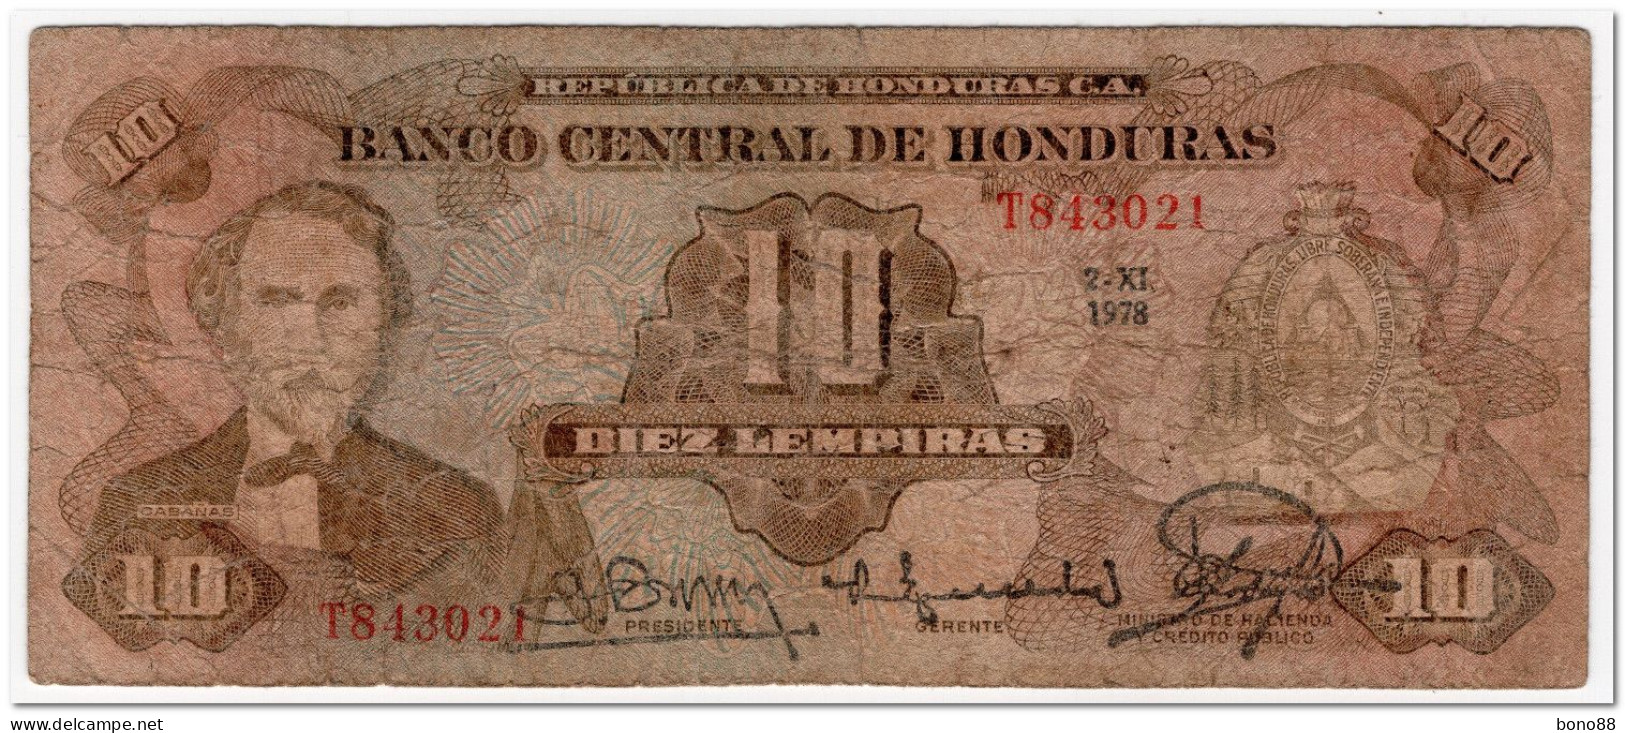 HONDURAS,10 LEMPIRAS,1978,P.64a,CIRCULATED - Honduras